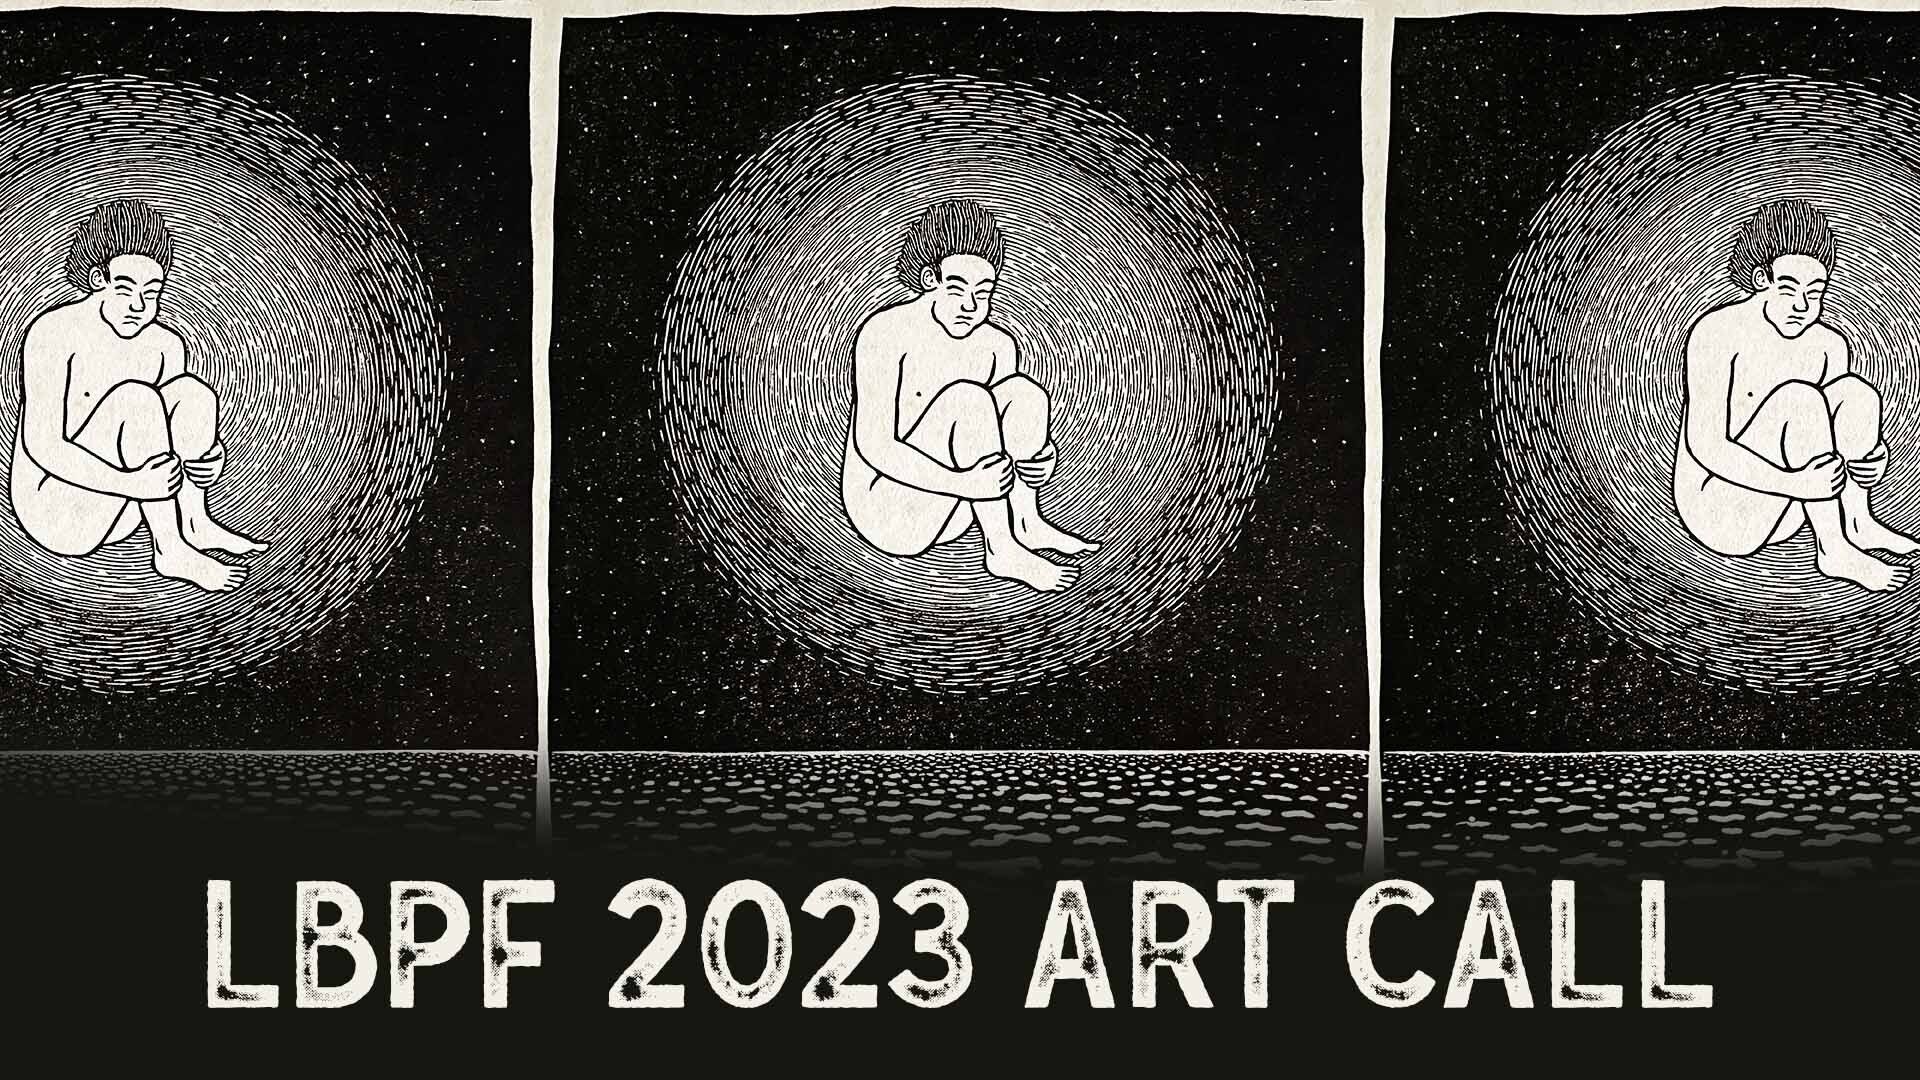 LBPF 2023 ART CALL